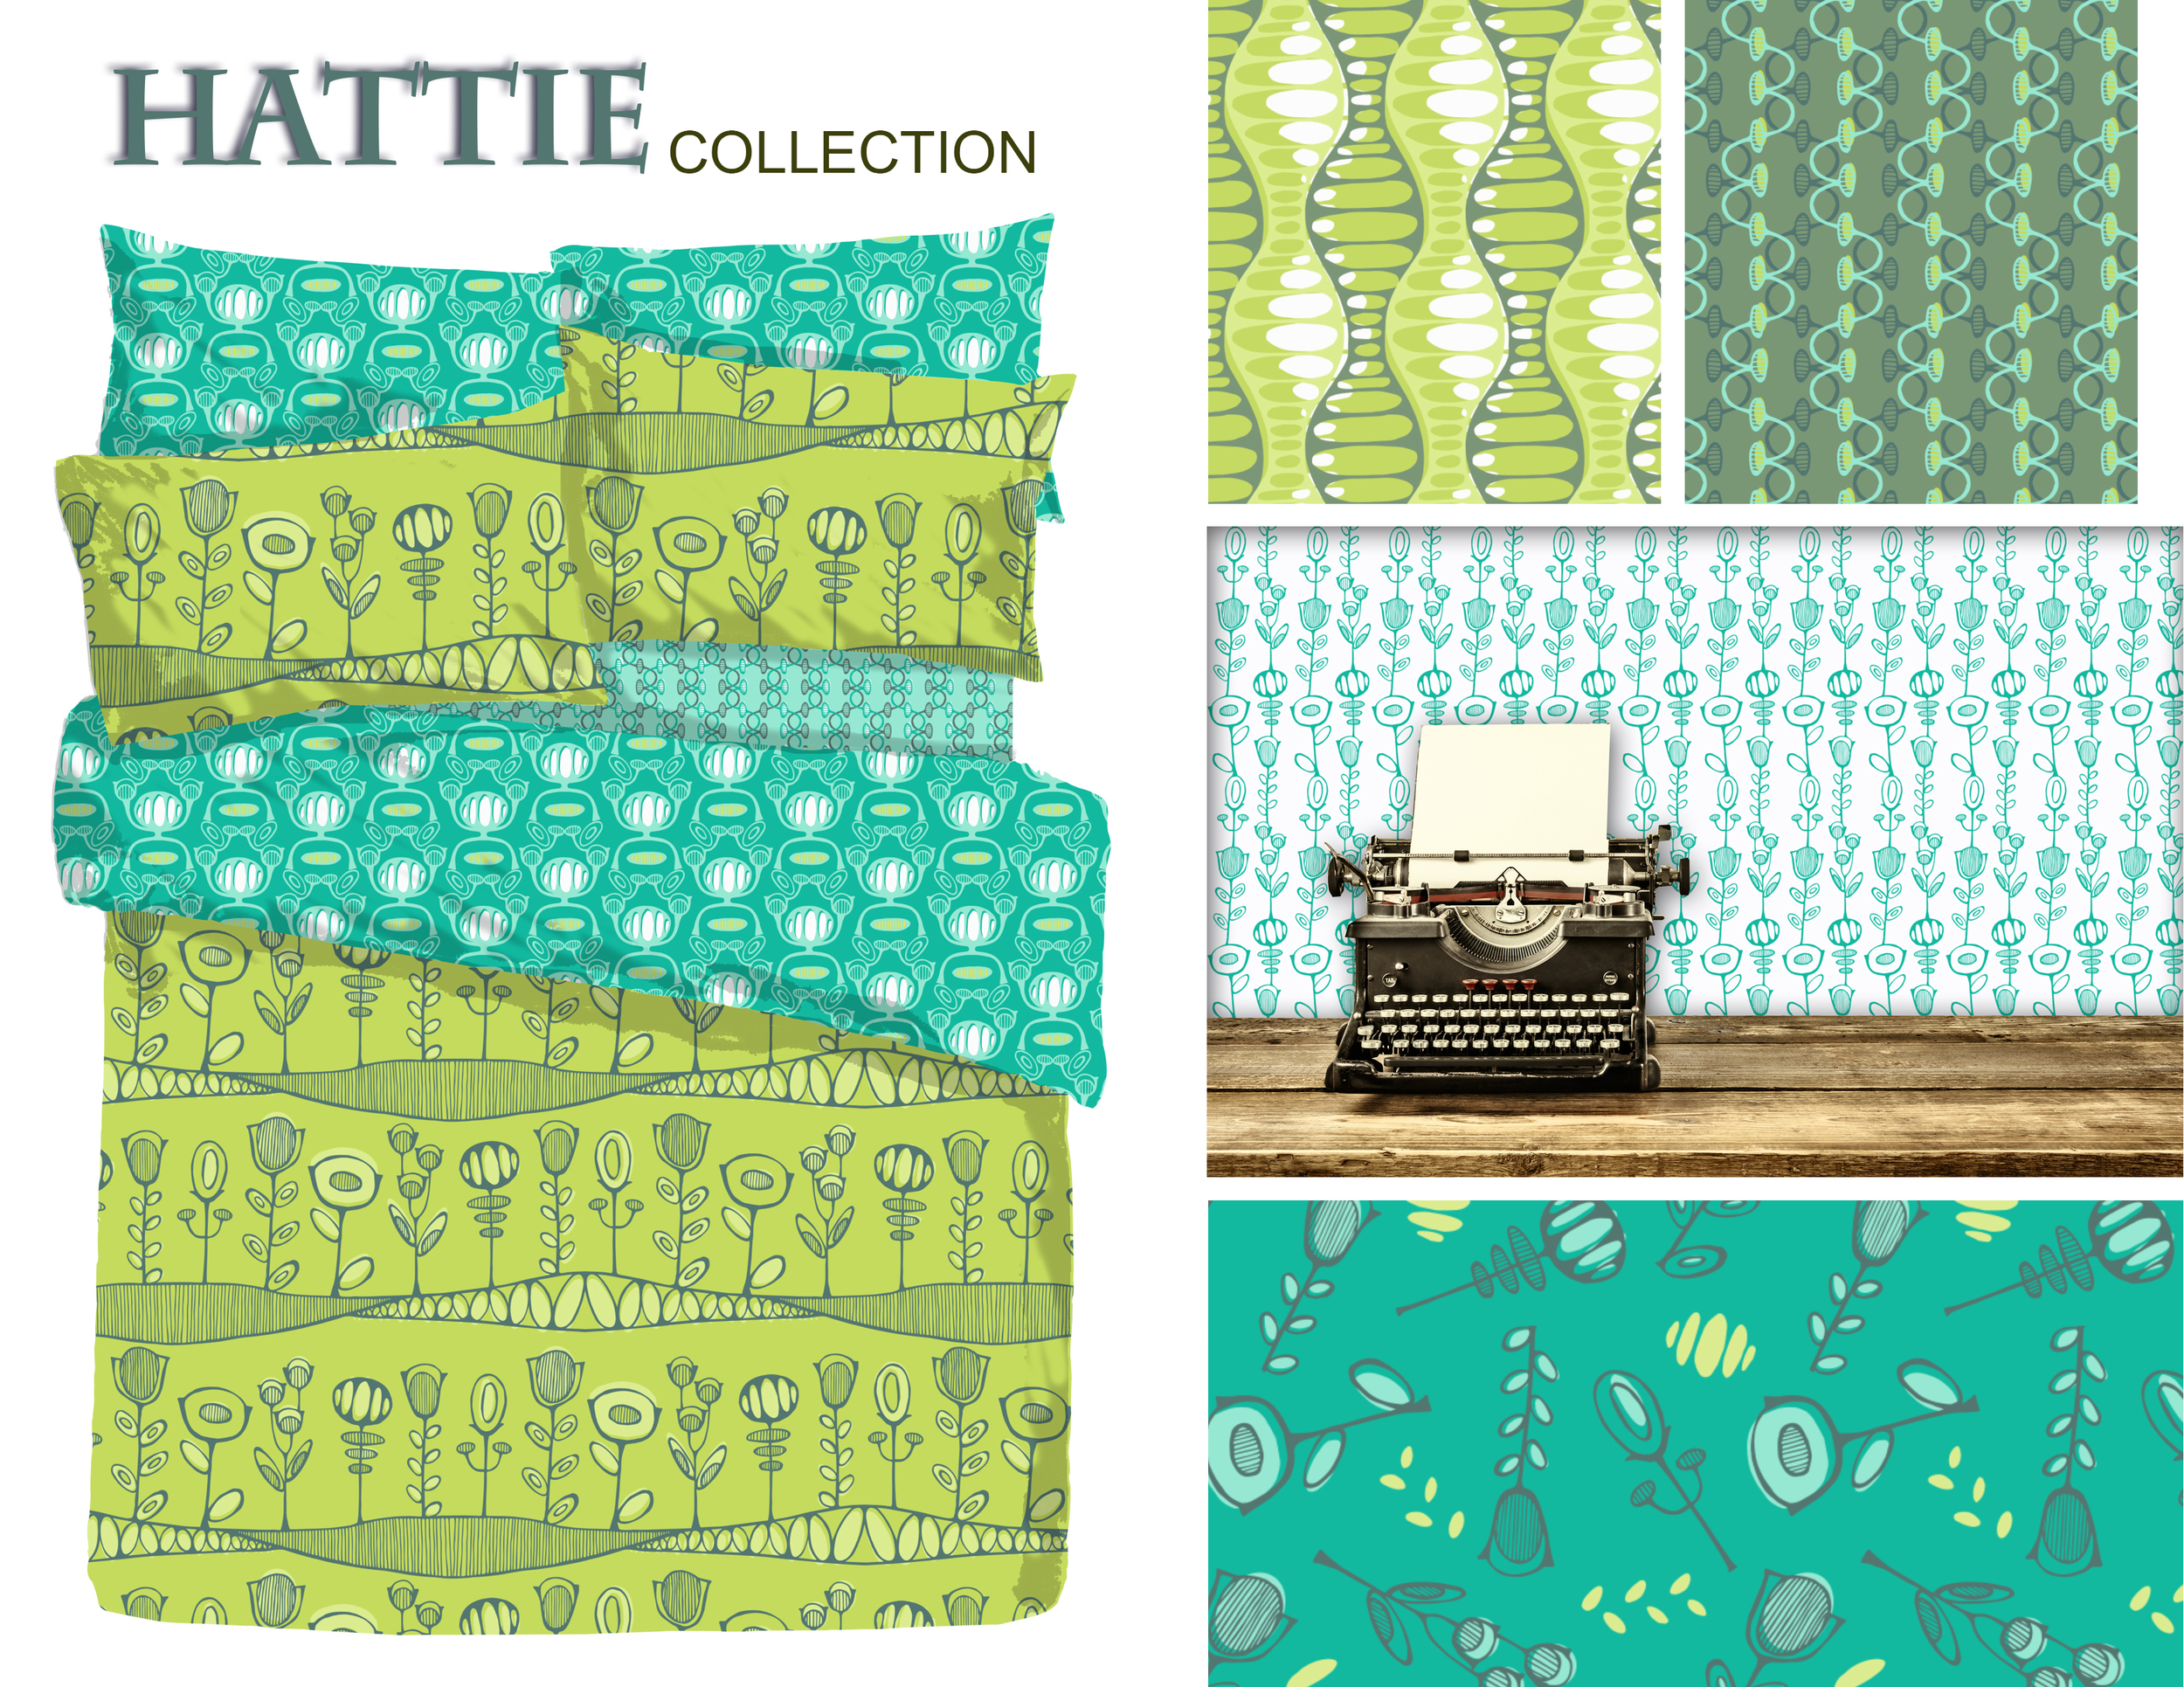 Hattie patterned mockups2.jpg